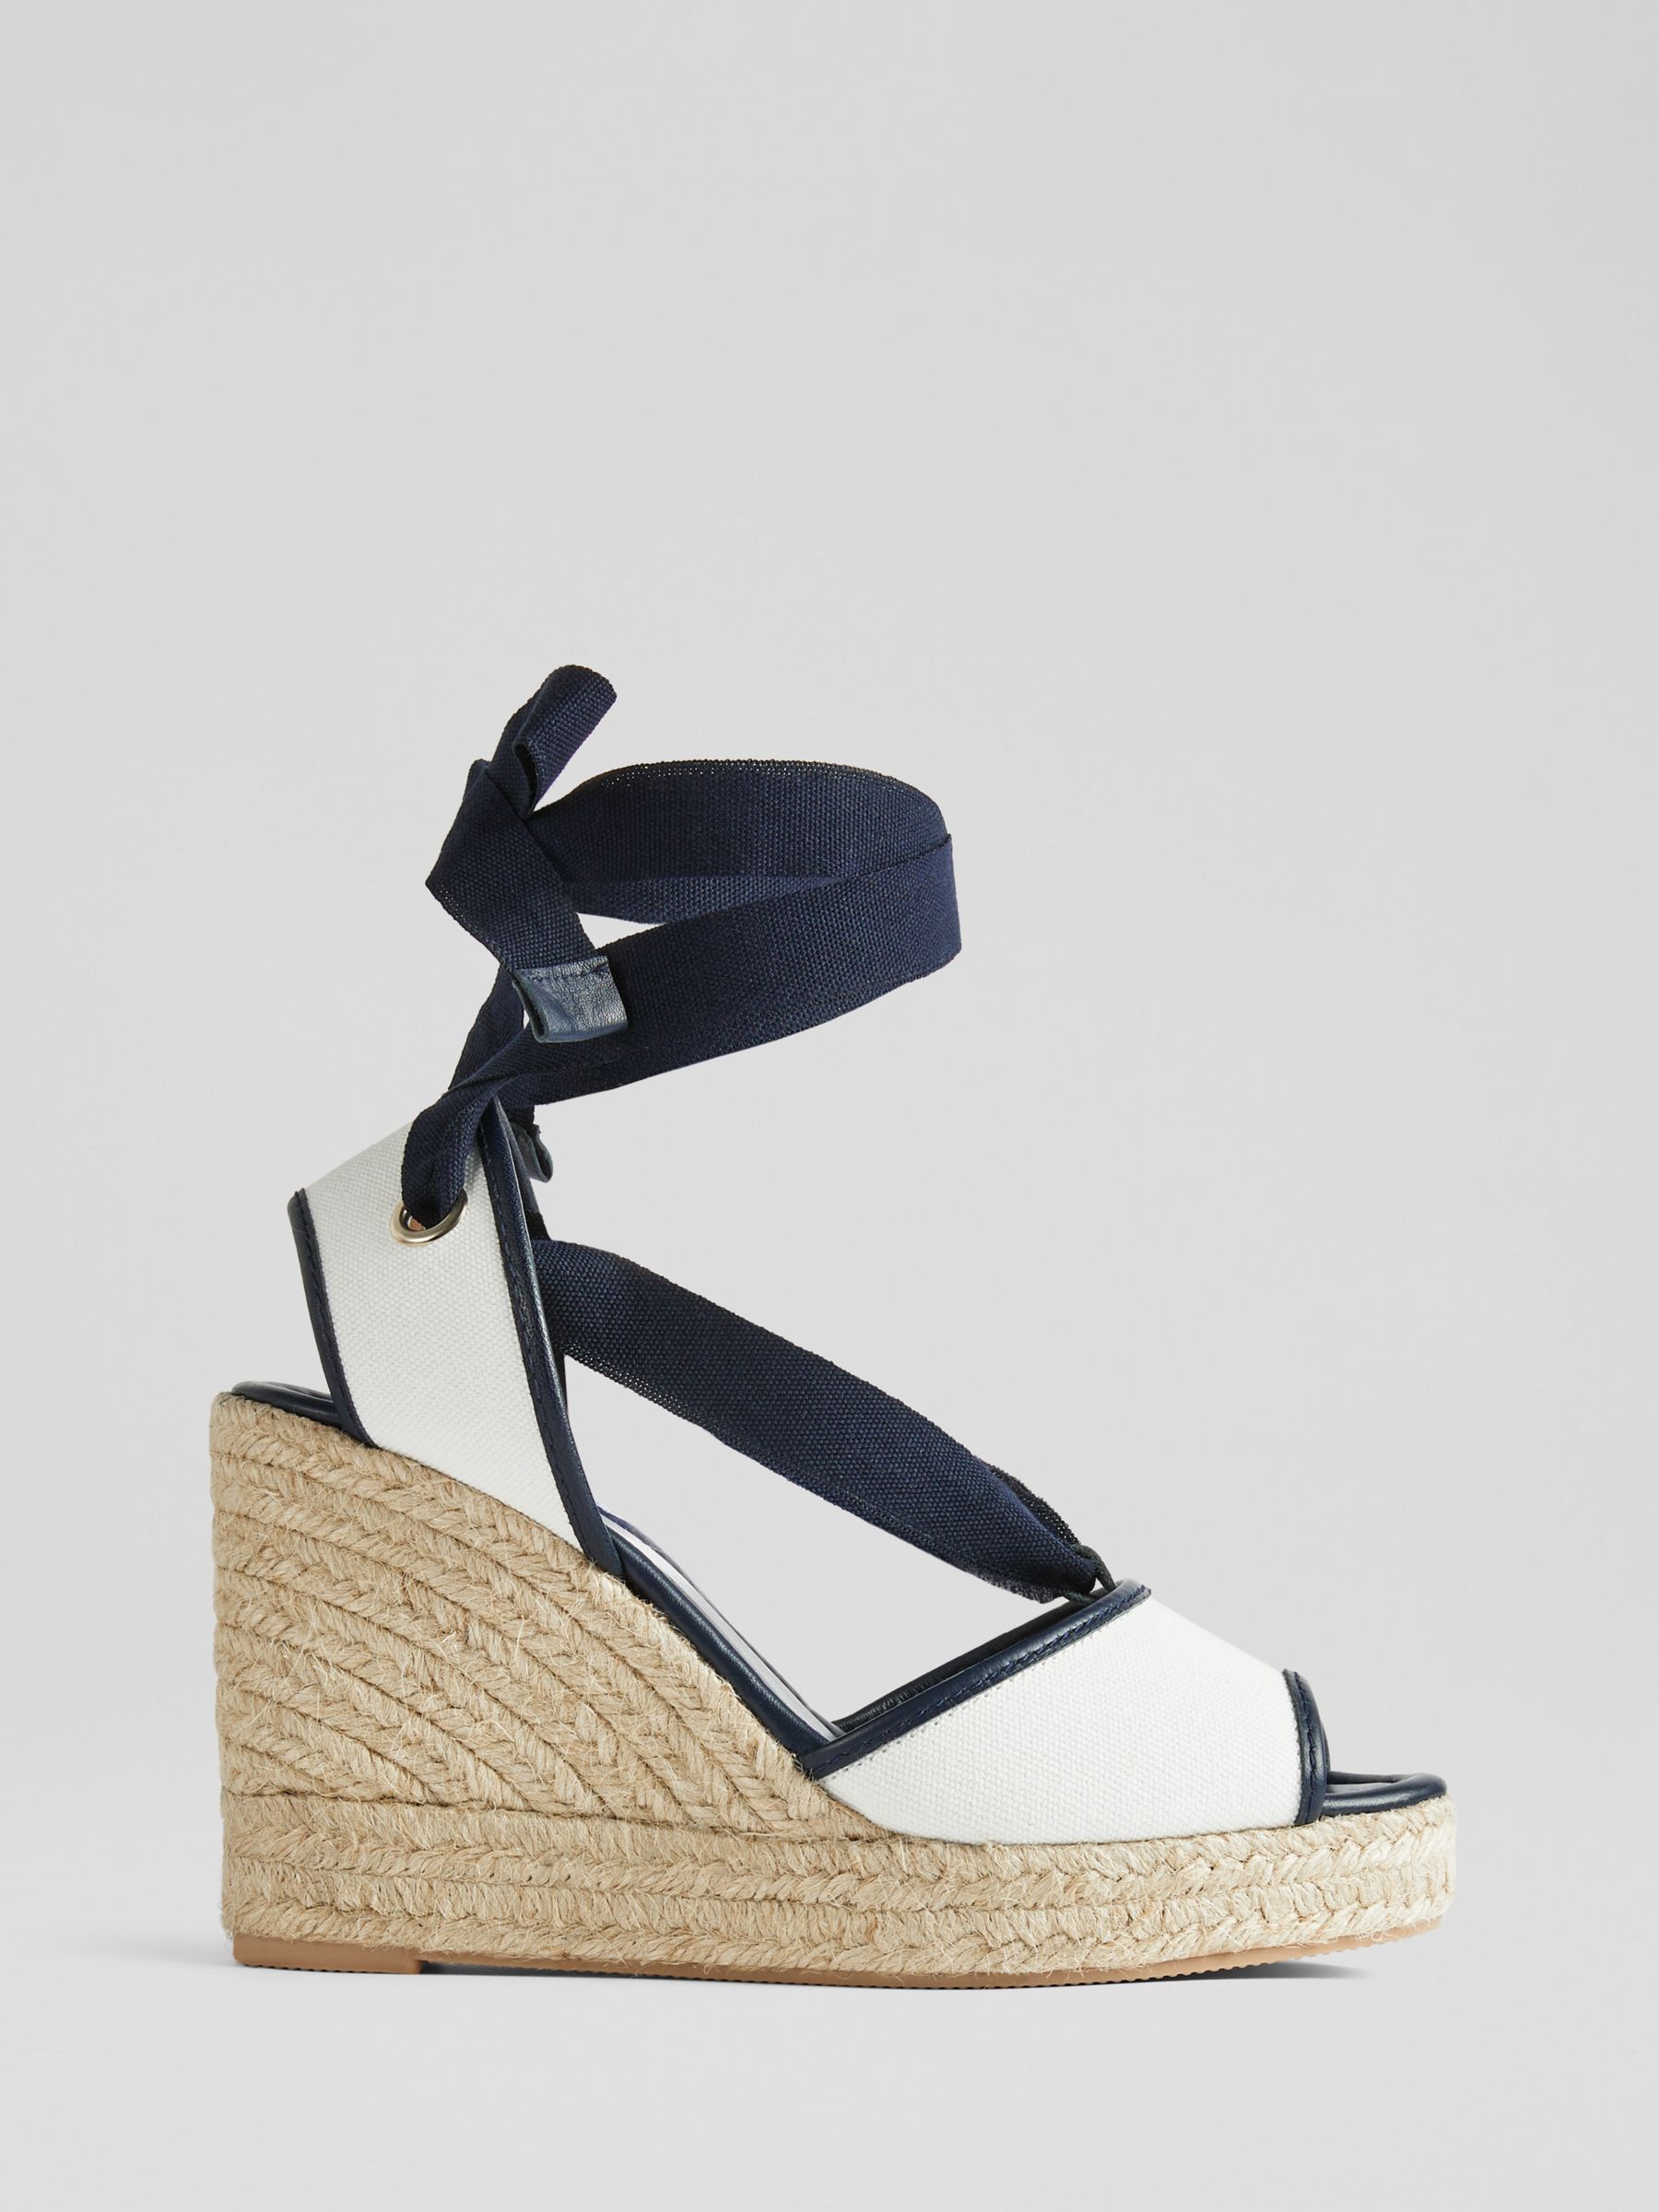 L.K.Bennett Chiara Espadrille Wedge Sandals, Navy/Cream, 2